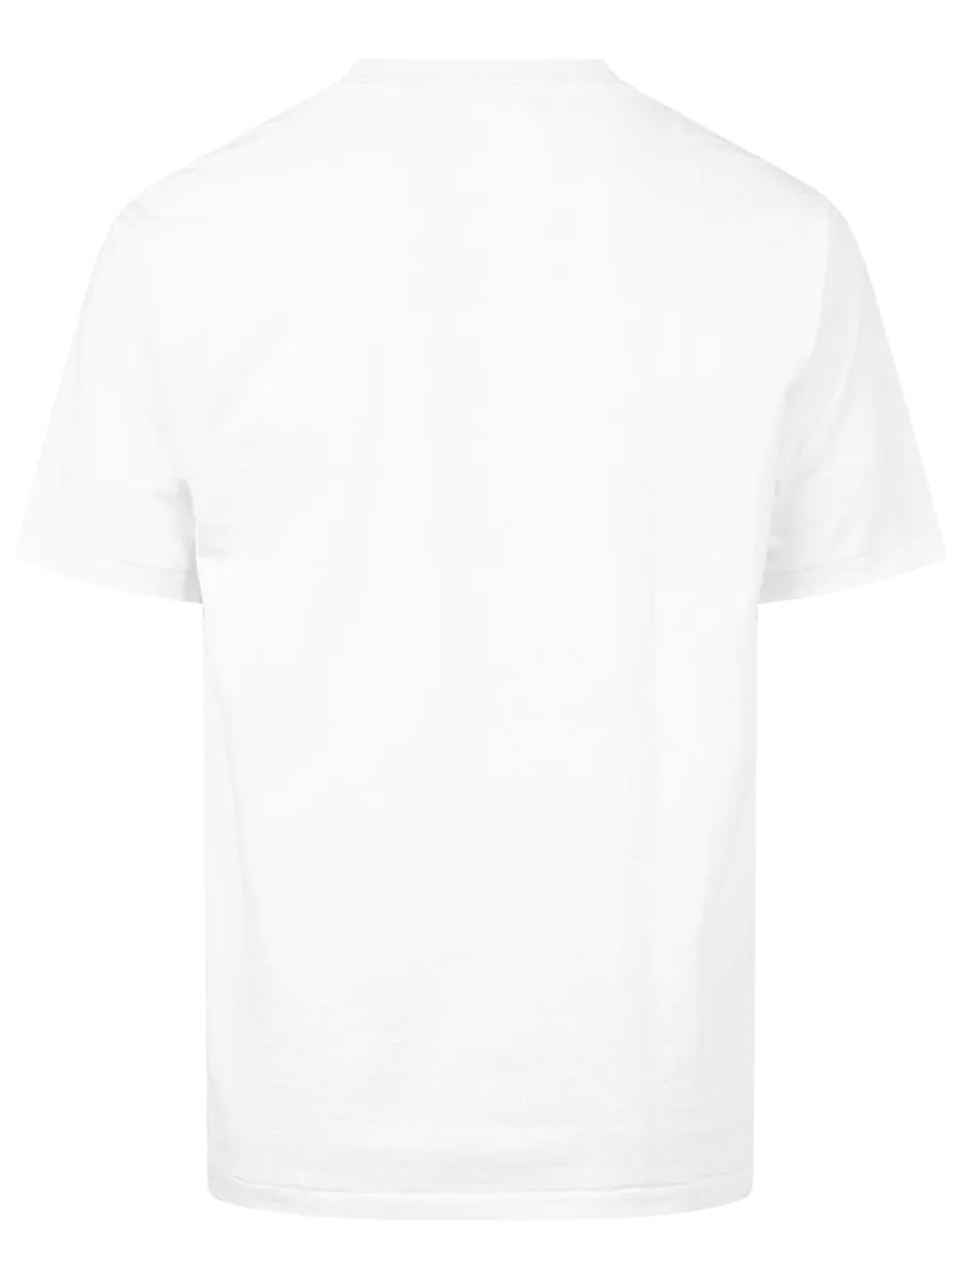 Imagem de: Camiseta BAPE Branca com Logo Cristal